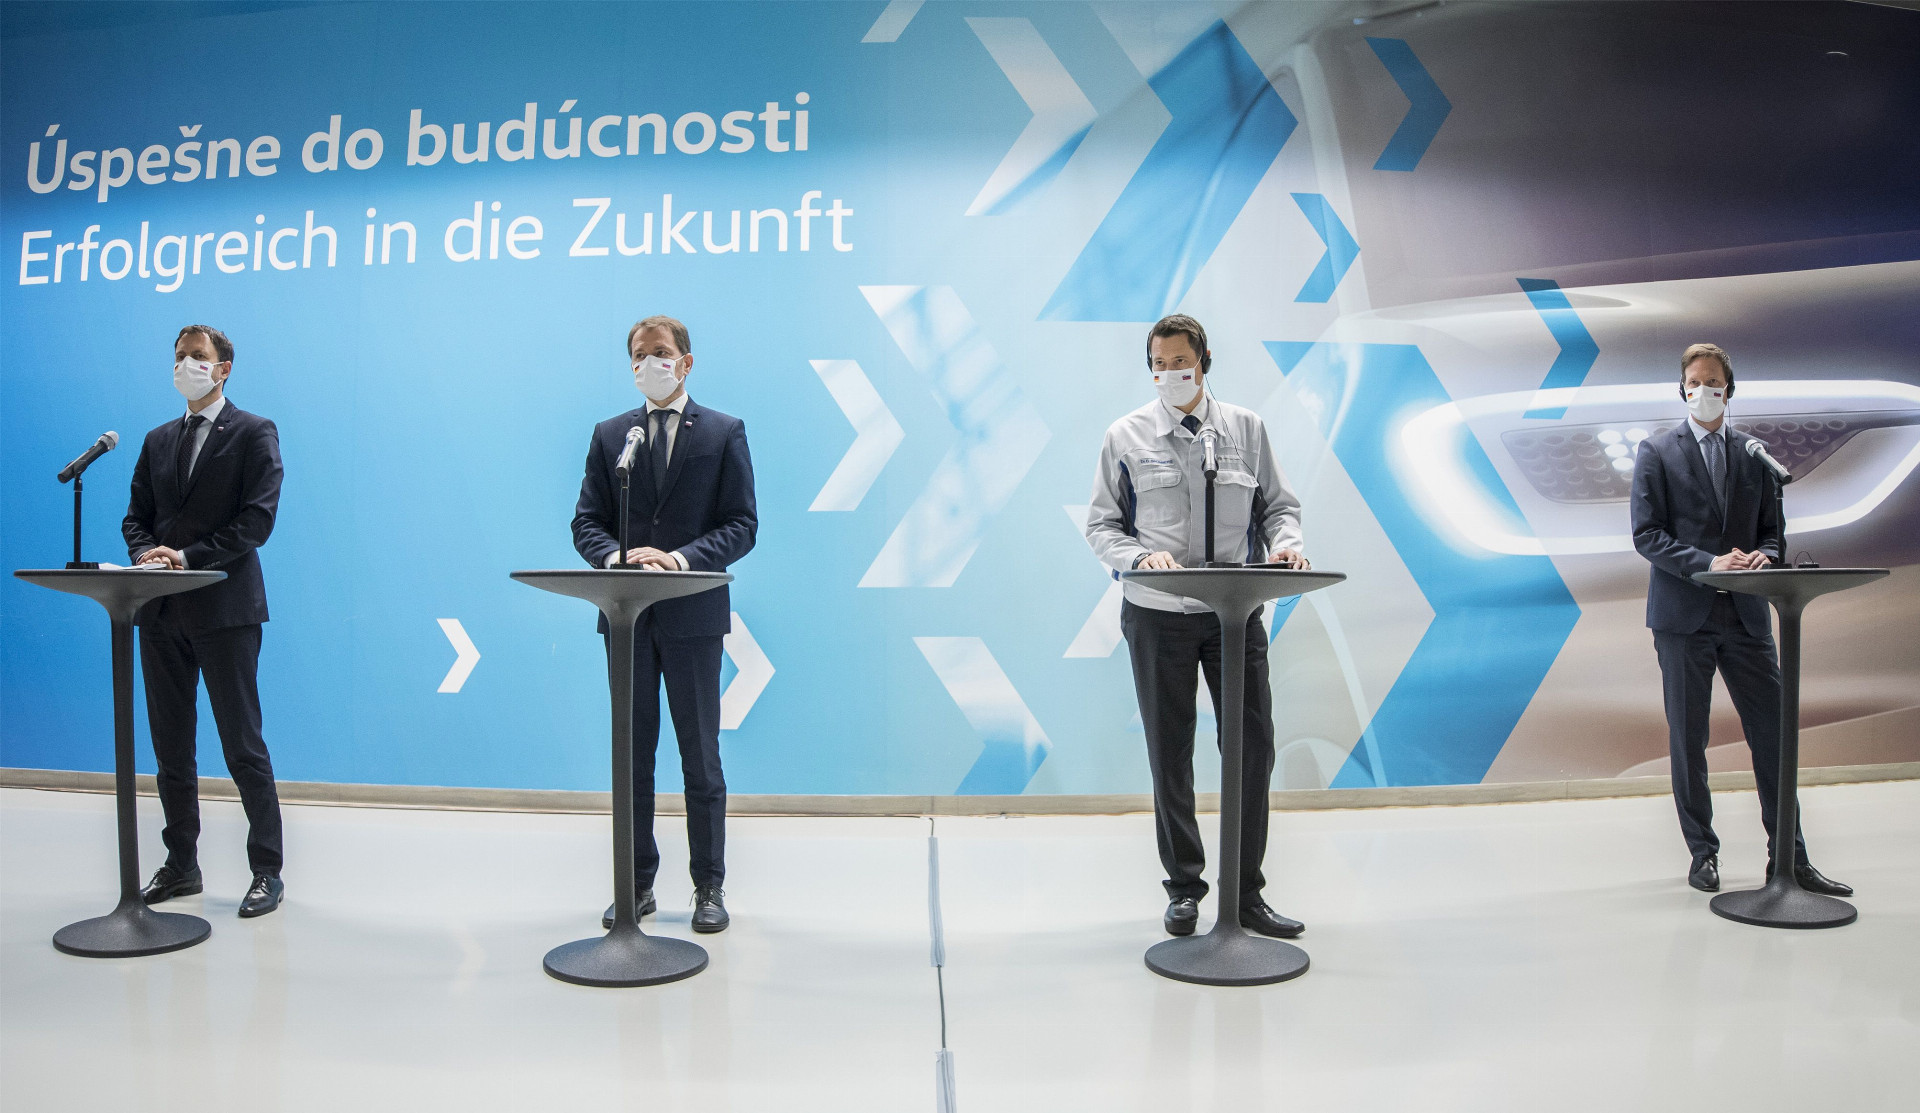 Investíciu oficiálne predstavili (zľava) minister financií Eduard Heger, premiér Igor Matovič, predseda predstavenstva Oliver Grünberg a podpreseda Sebastian
Krapoth.